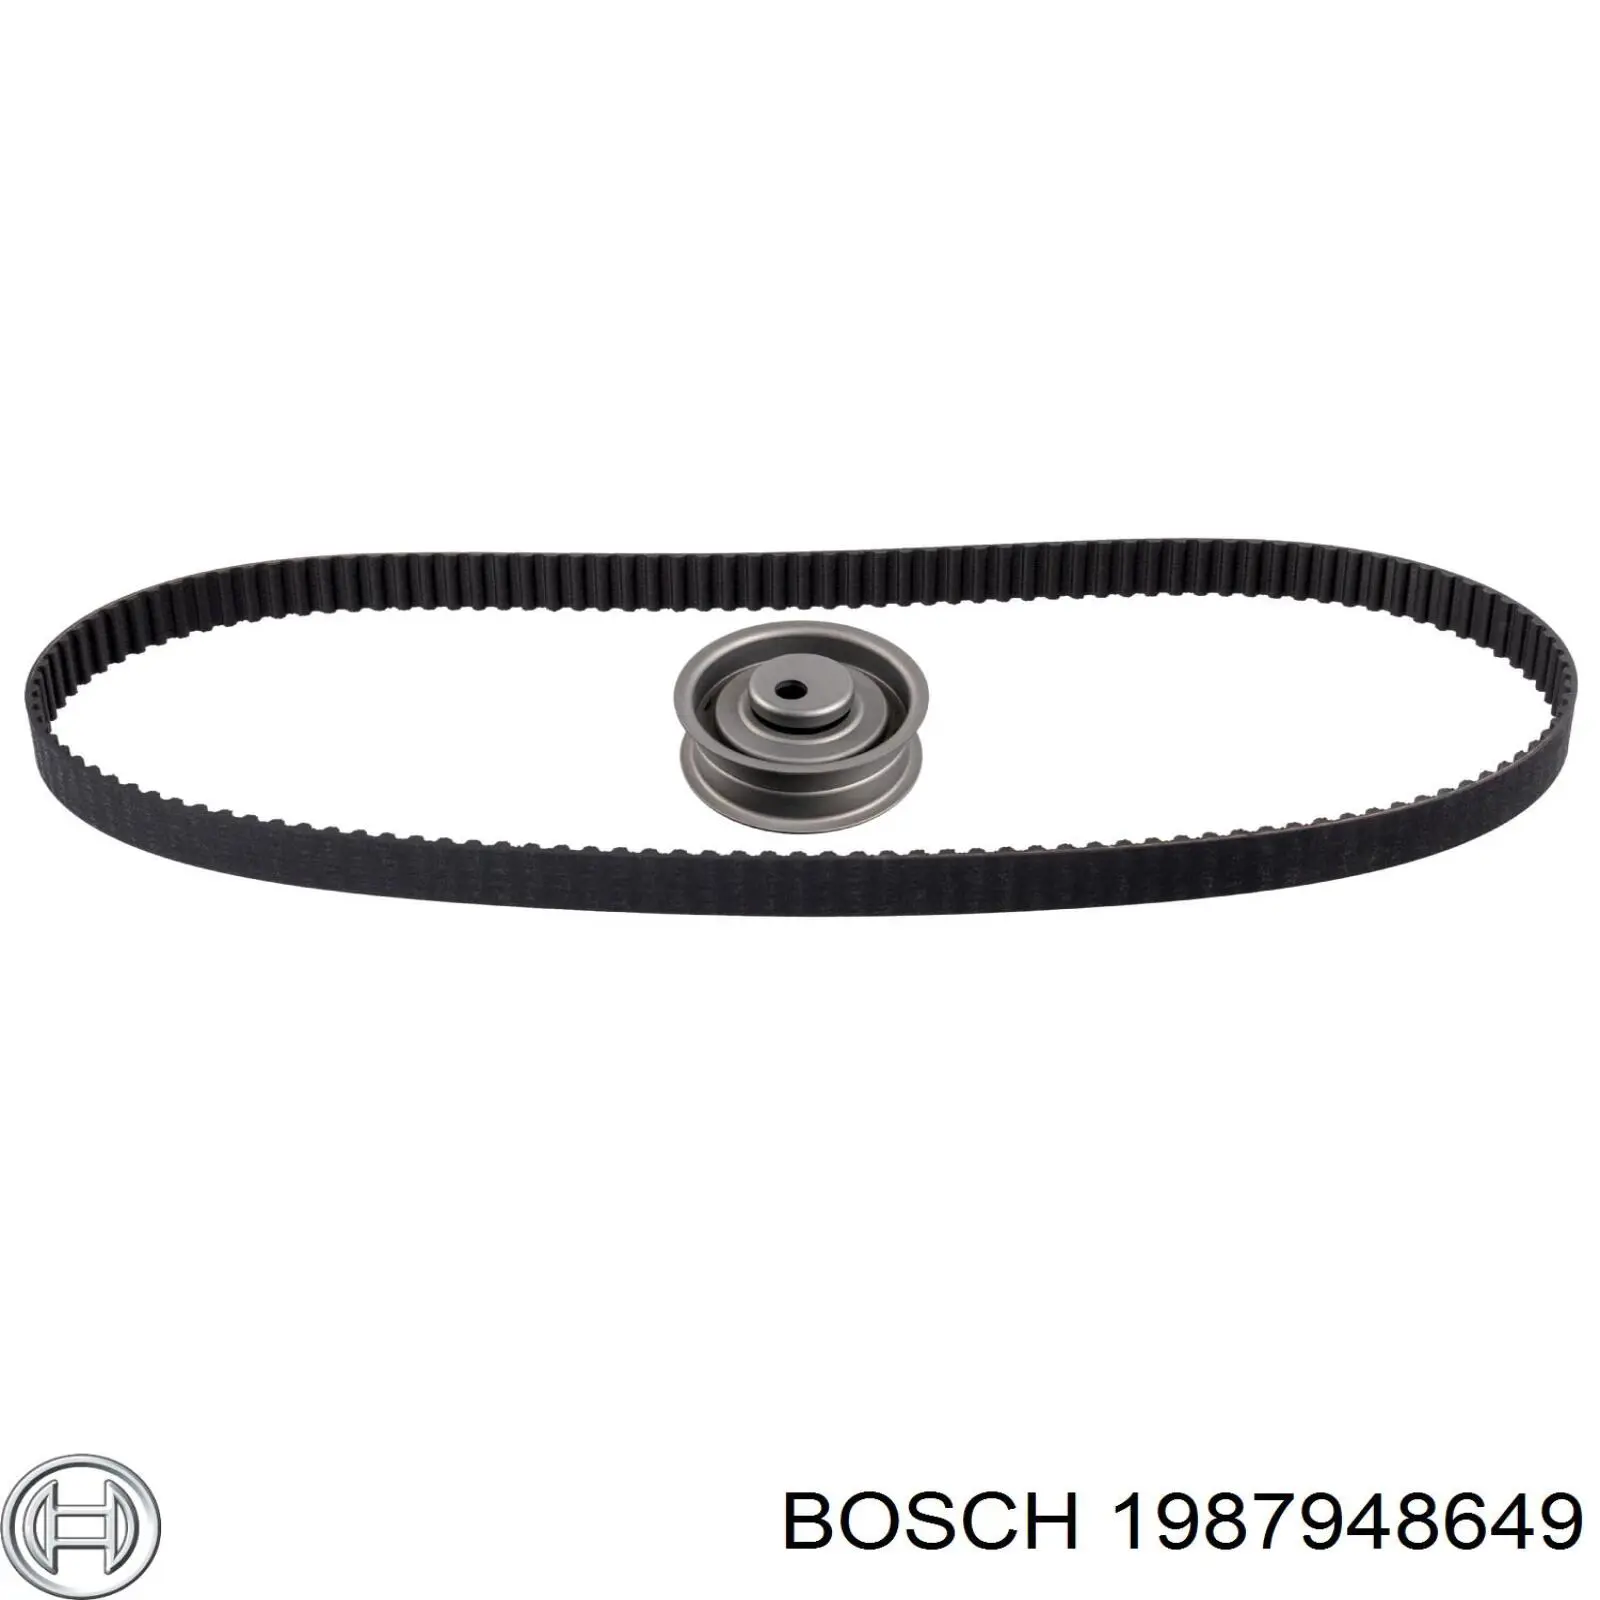 1987948649 Bosch kit de distribución